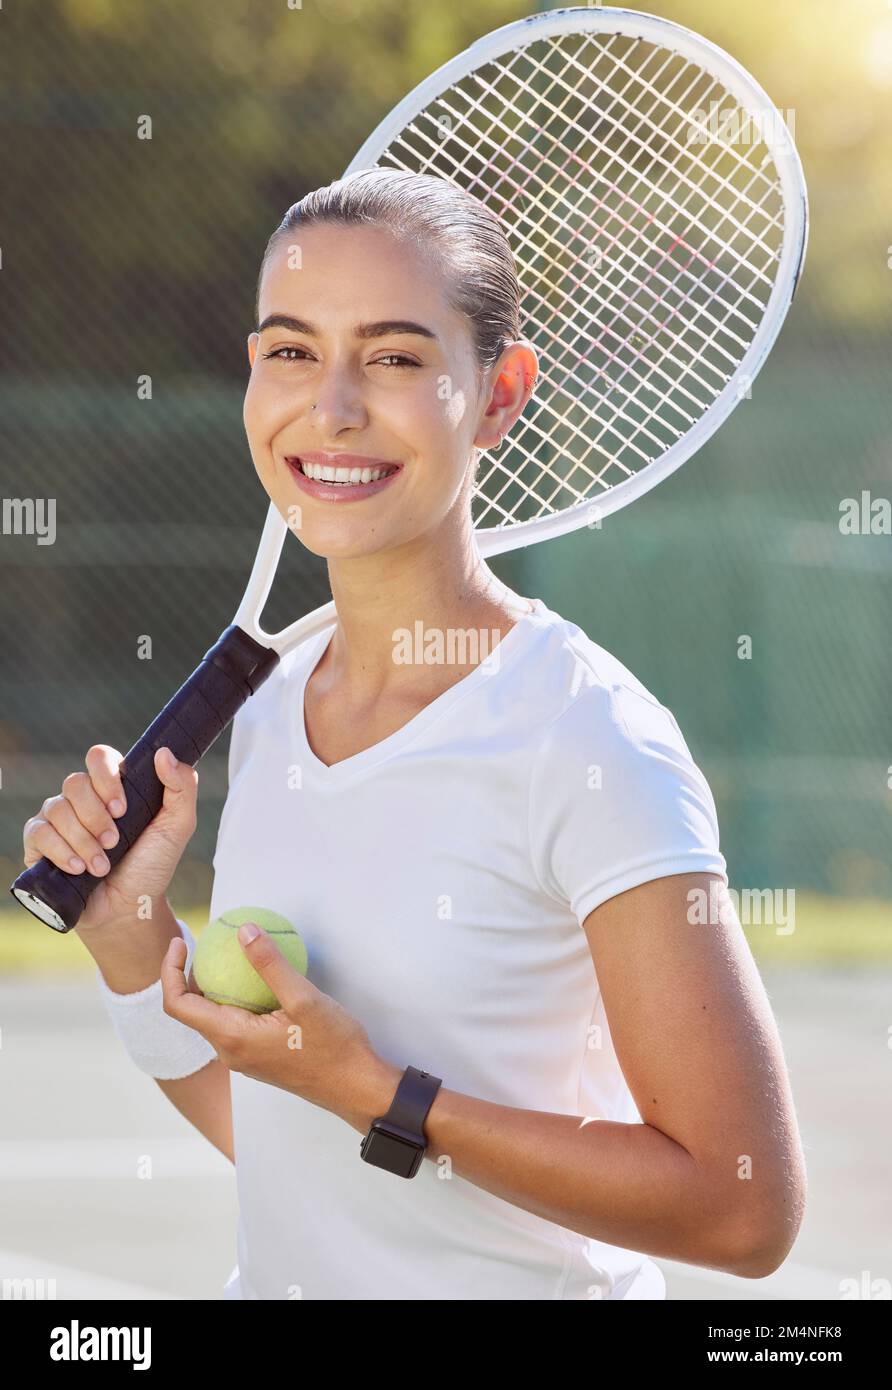 Tennis game, ritratto sportivo e allenamento femminile per eventi professionali, felice sul campo d'estate e sorriso per motivazione in competizione. Atleta Foto Stock